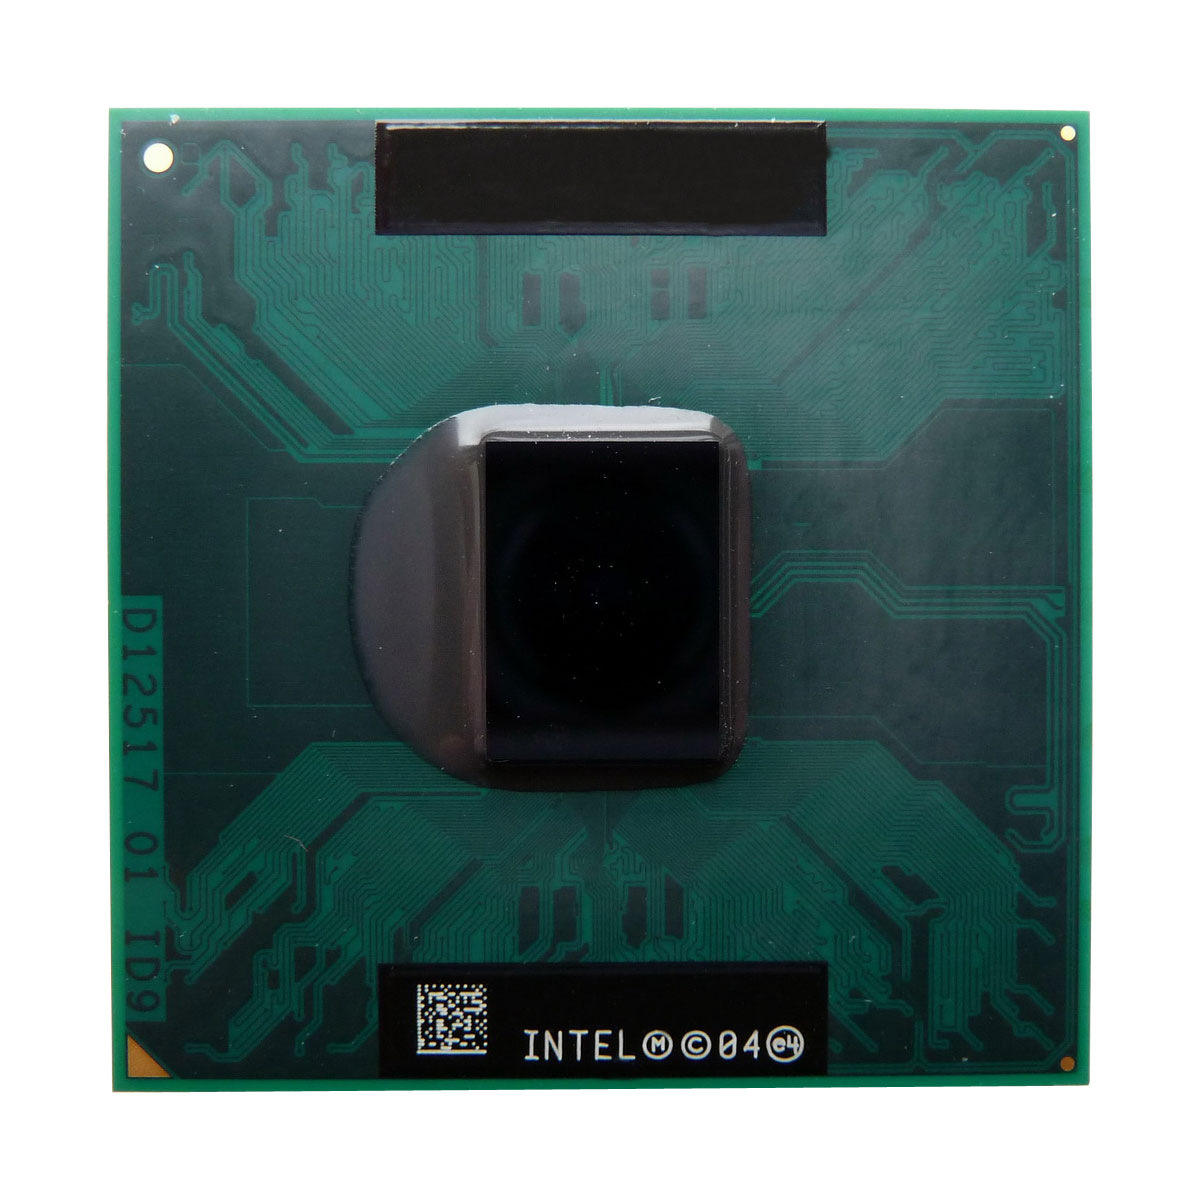 WJ838 | Dell 1.66GHz 667MHz FSB 2MB L2 Cache Intel Core Duo T2300E Dual Core Processor